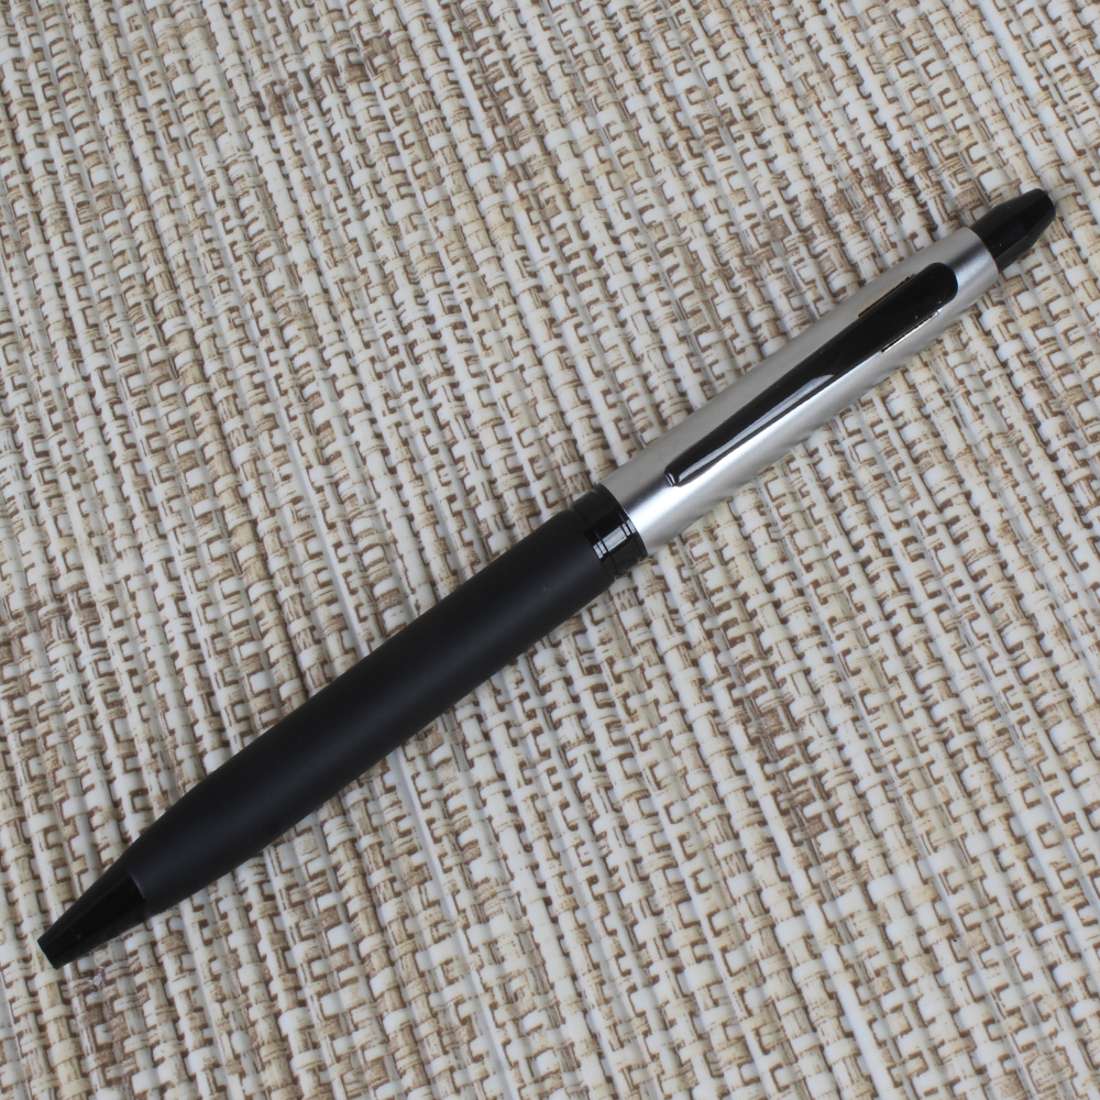 Black and sliver Matte Finish pen